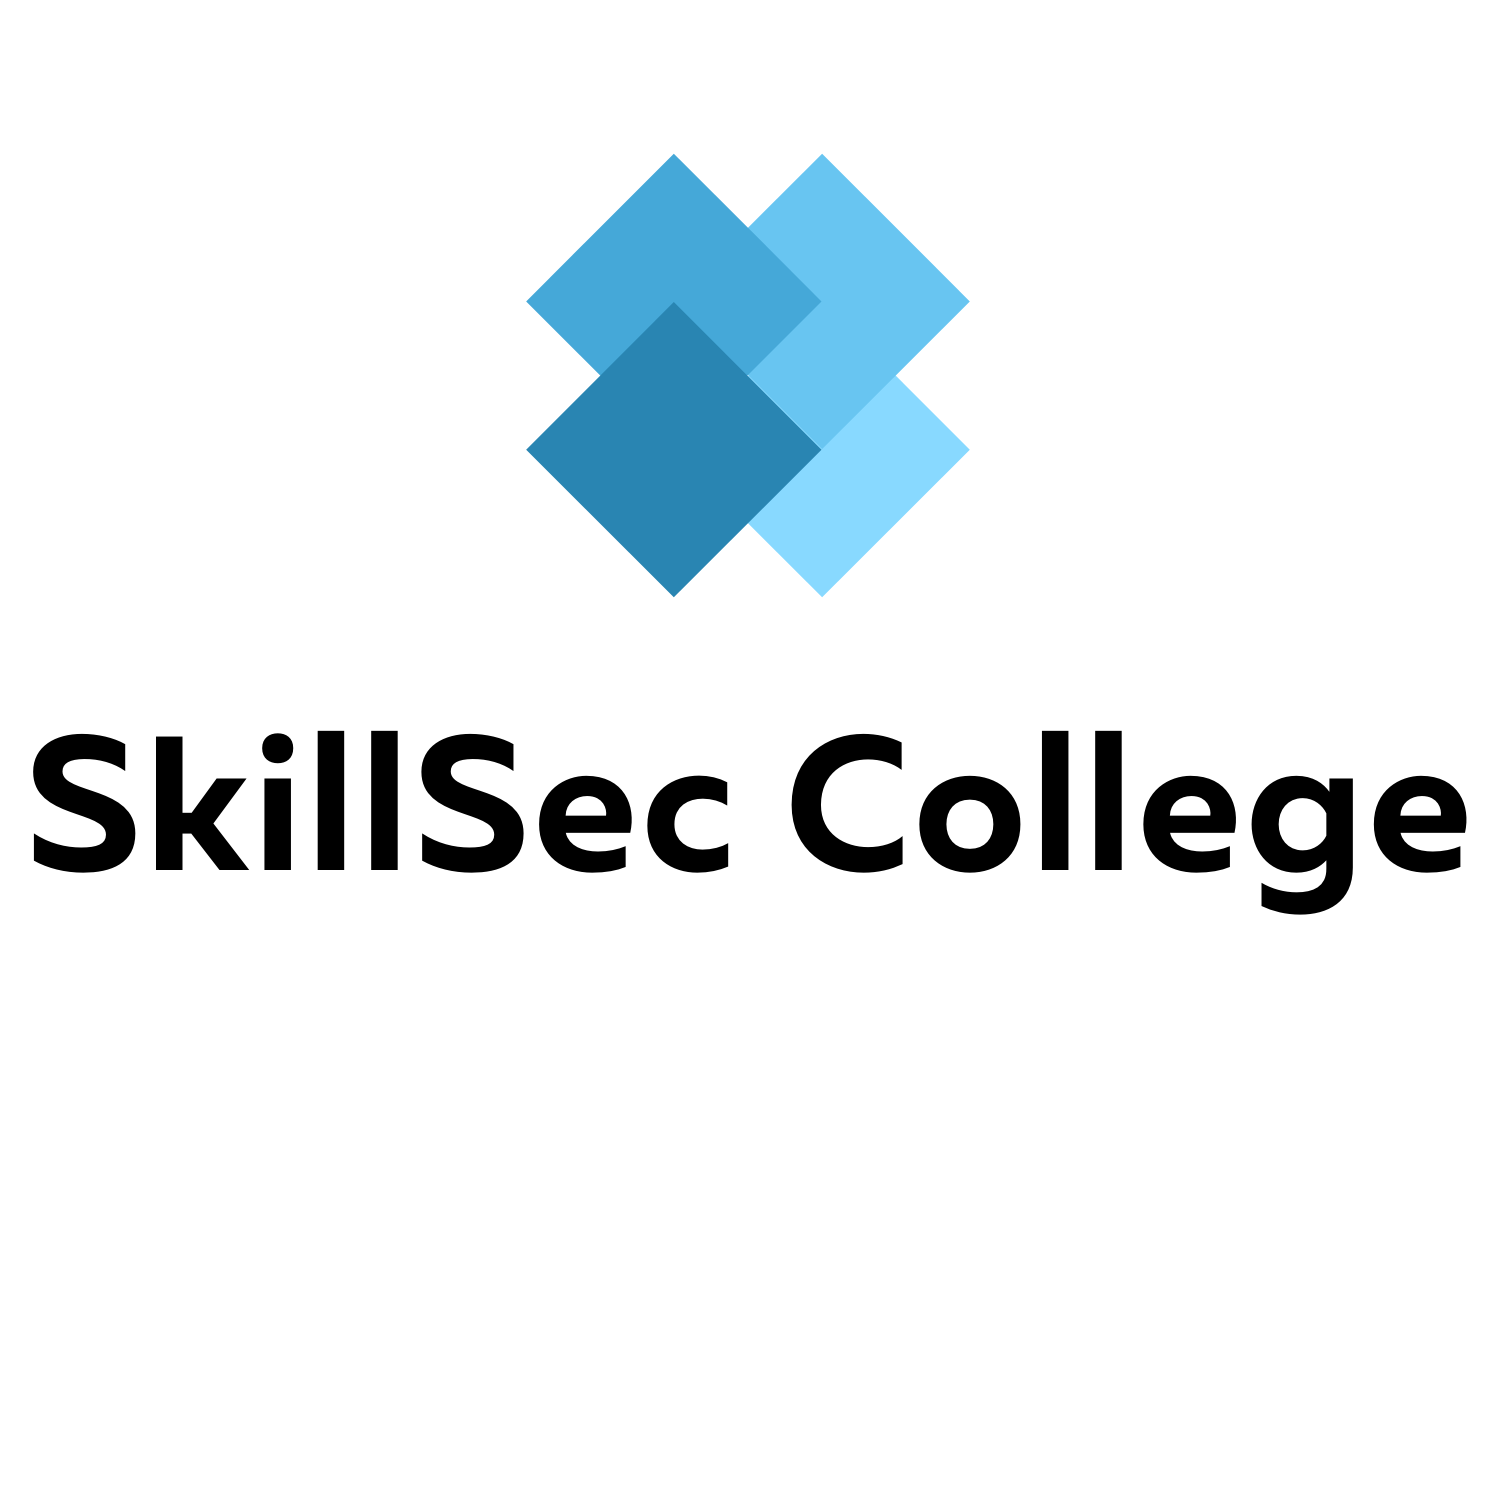 SkillSec College